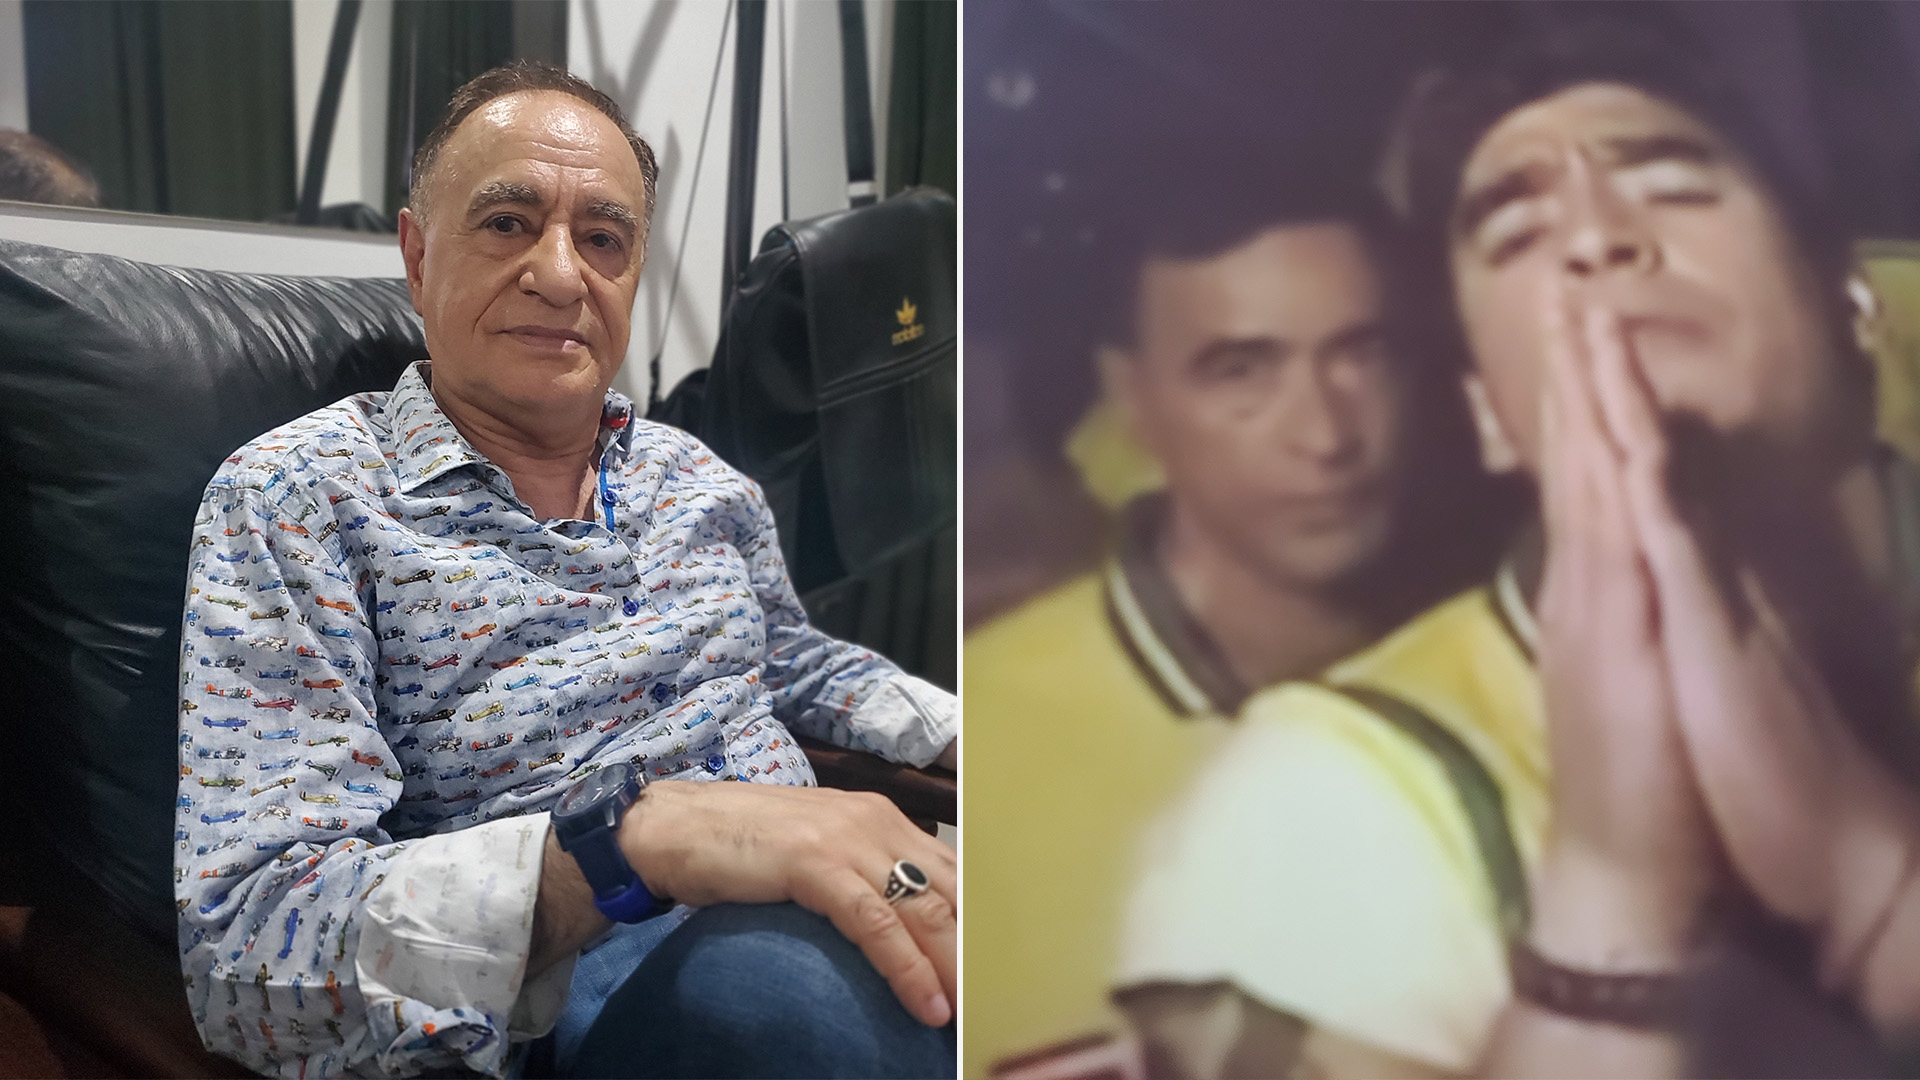 Carlos Ferro Viera revela el lado oscuro de Maradona: las drogas, los hijos extramatrimoniales, la vez que casi pierde las piernas por amor